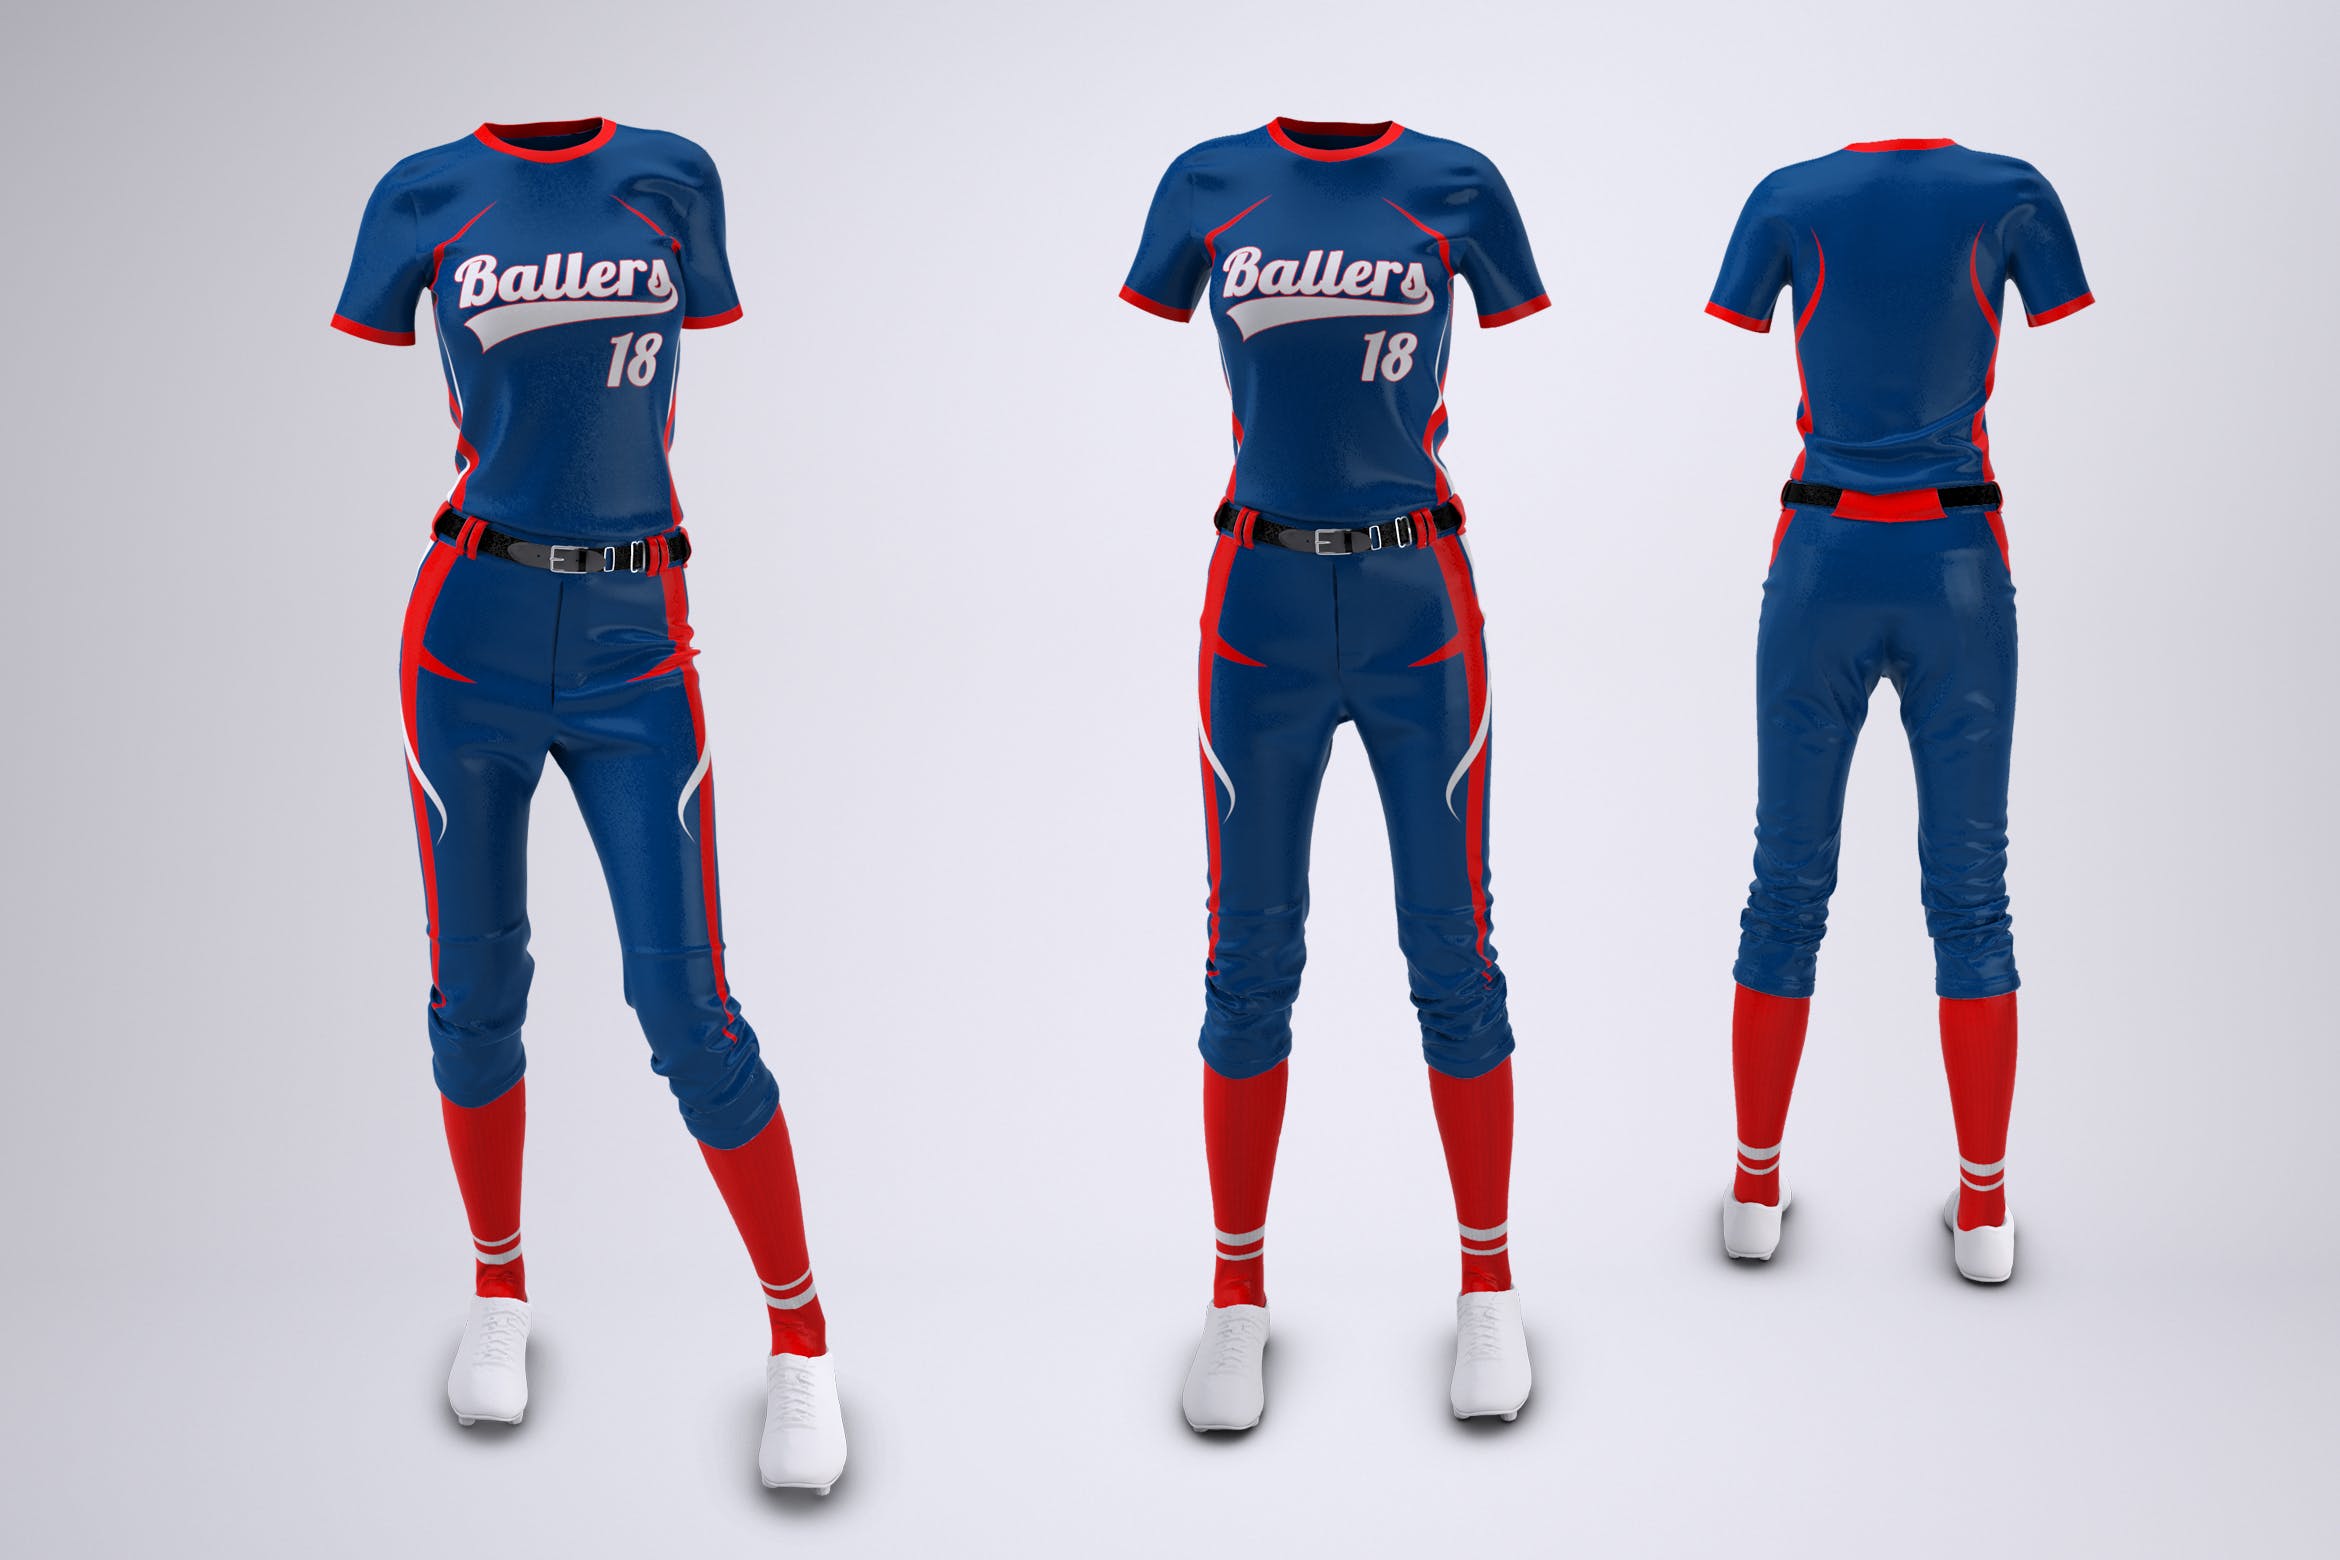 女子垒球队服制服设计效果图样机 Women’s Softball Uniform Mock-Up插图